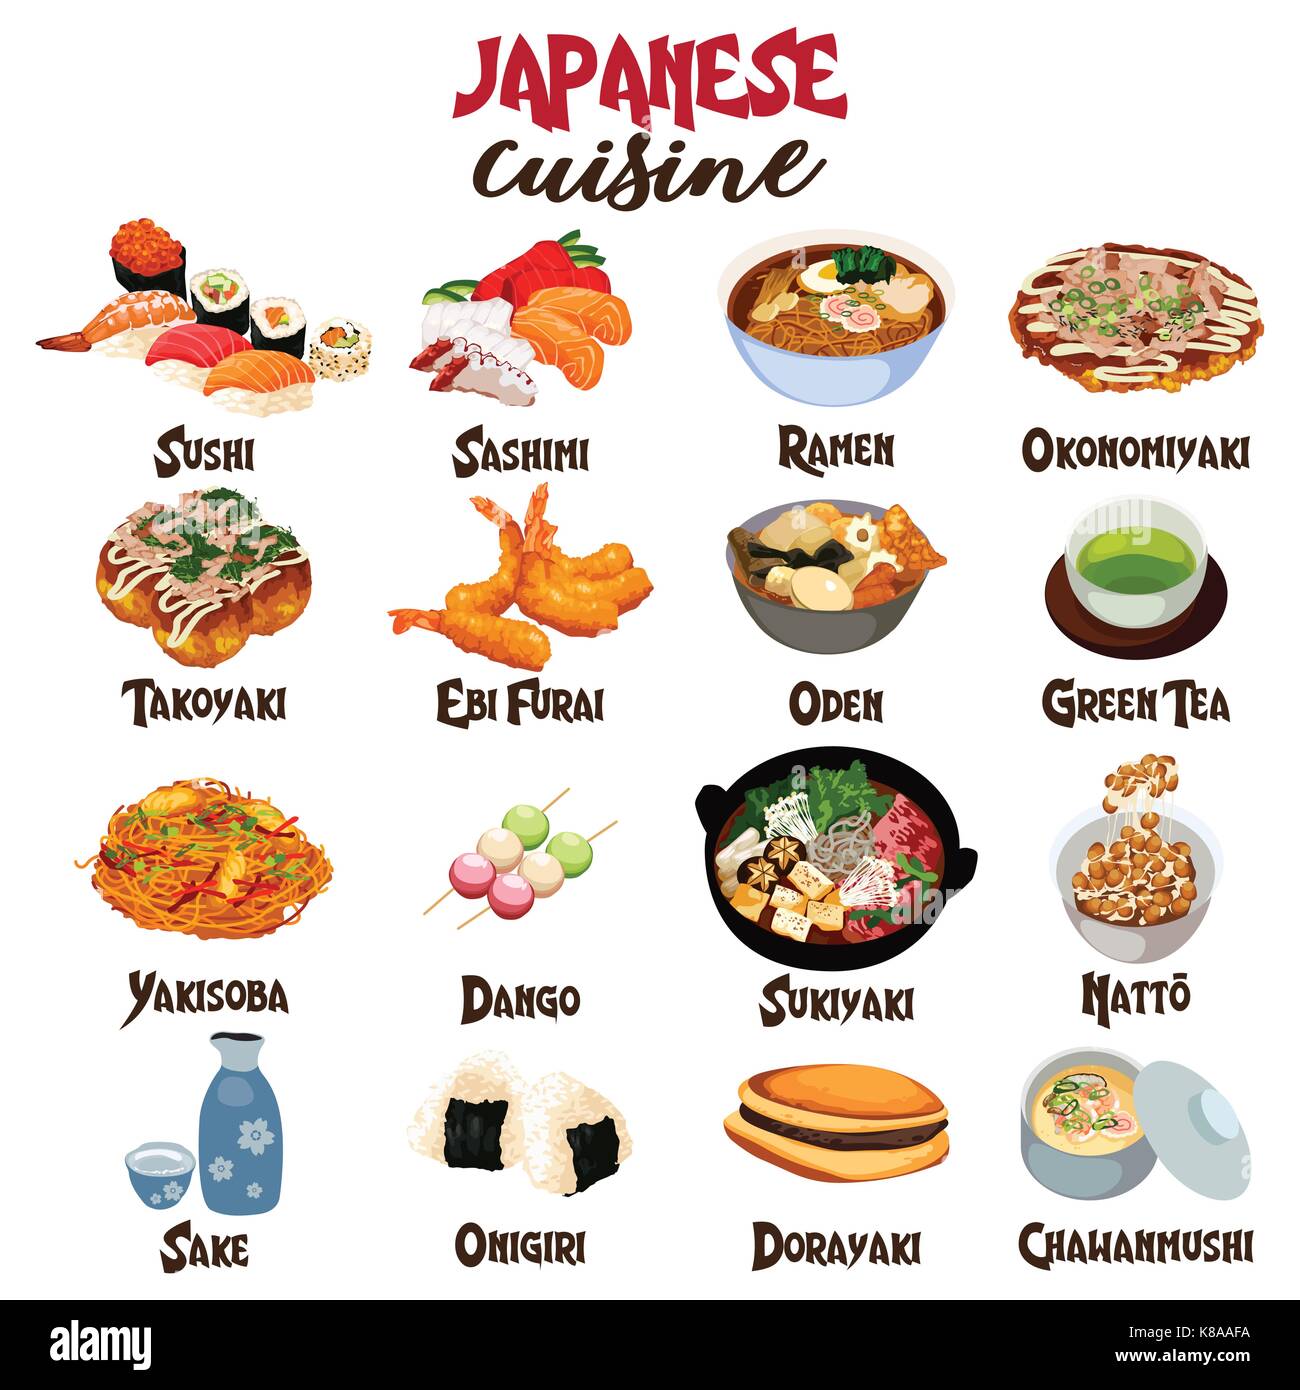 La cuisine japonaise - Foodwiki 